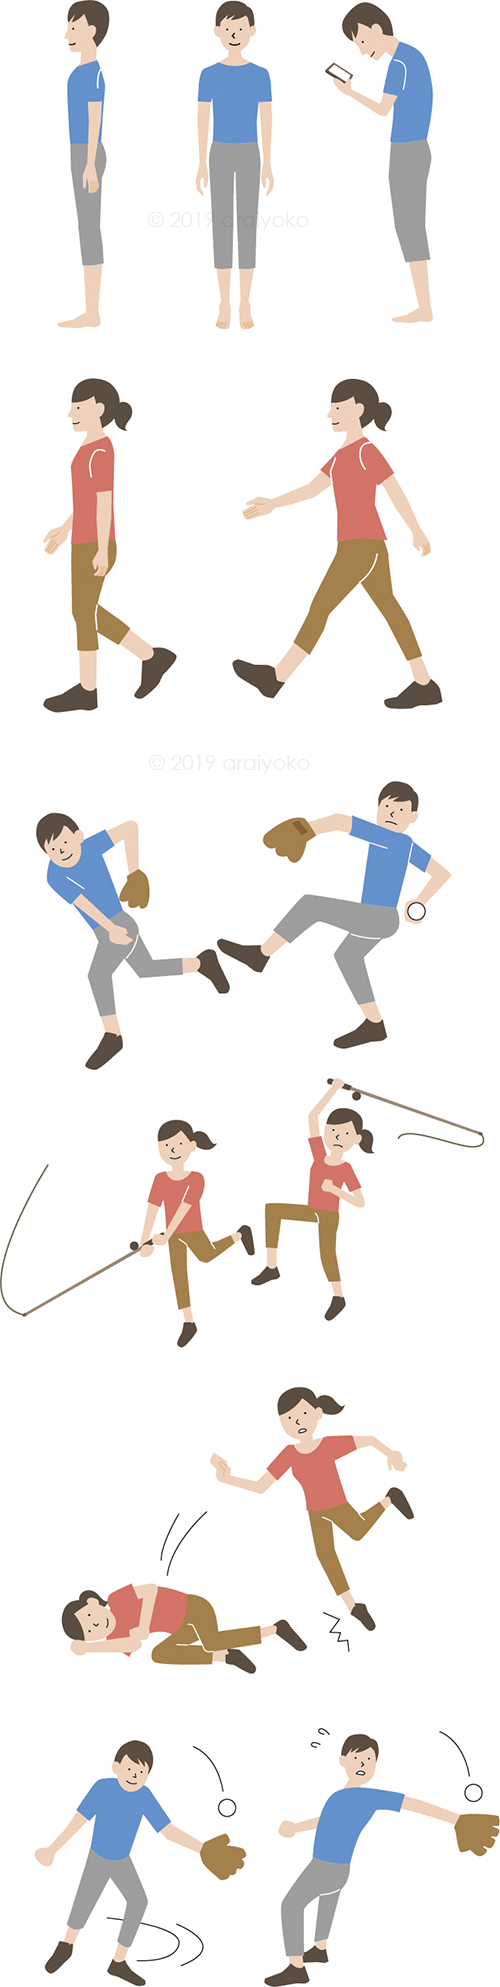 シンプルでわかりやすいタッチのイラストで正しい姿勢や歩き方 運動のイラストを描きました 公式 イラストレーター アライヨウコ Webサイト